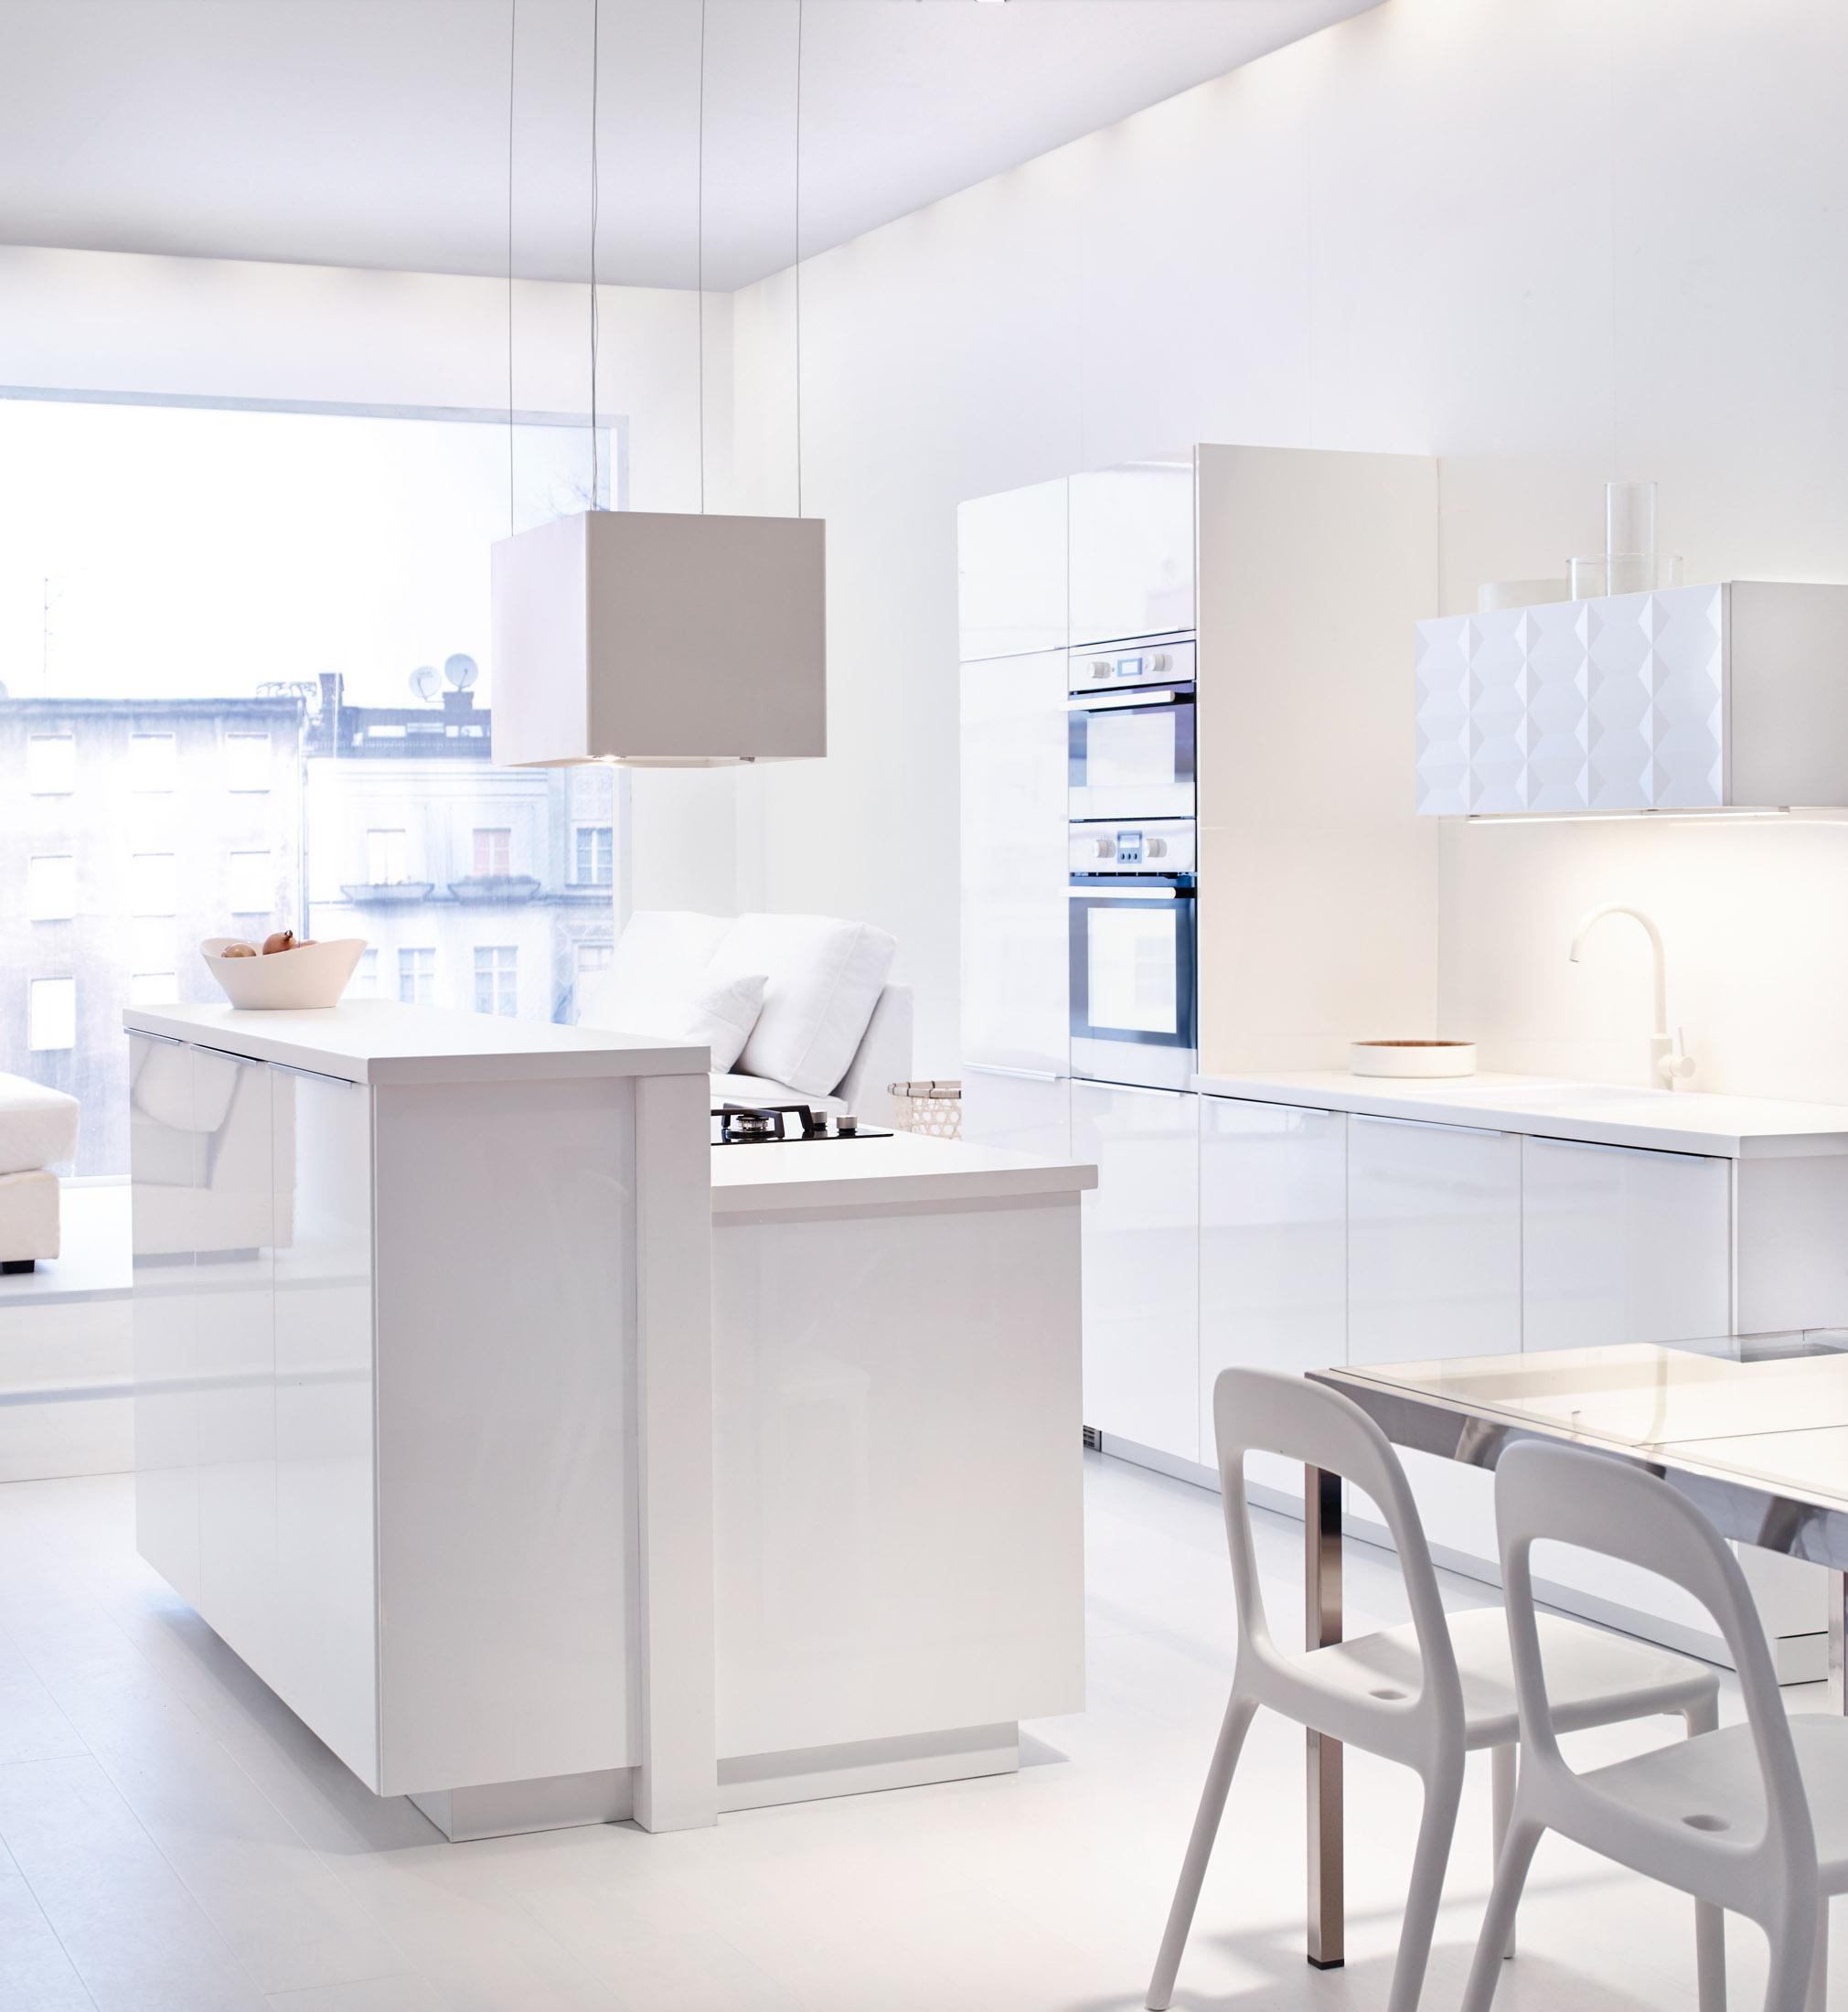 Küche in strahlendem Weiß #küche #esstisch #ikea #weißeküche ©Inter IKEA Systems B.V. 2014